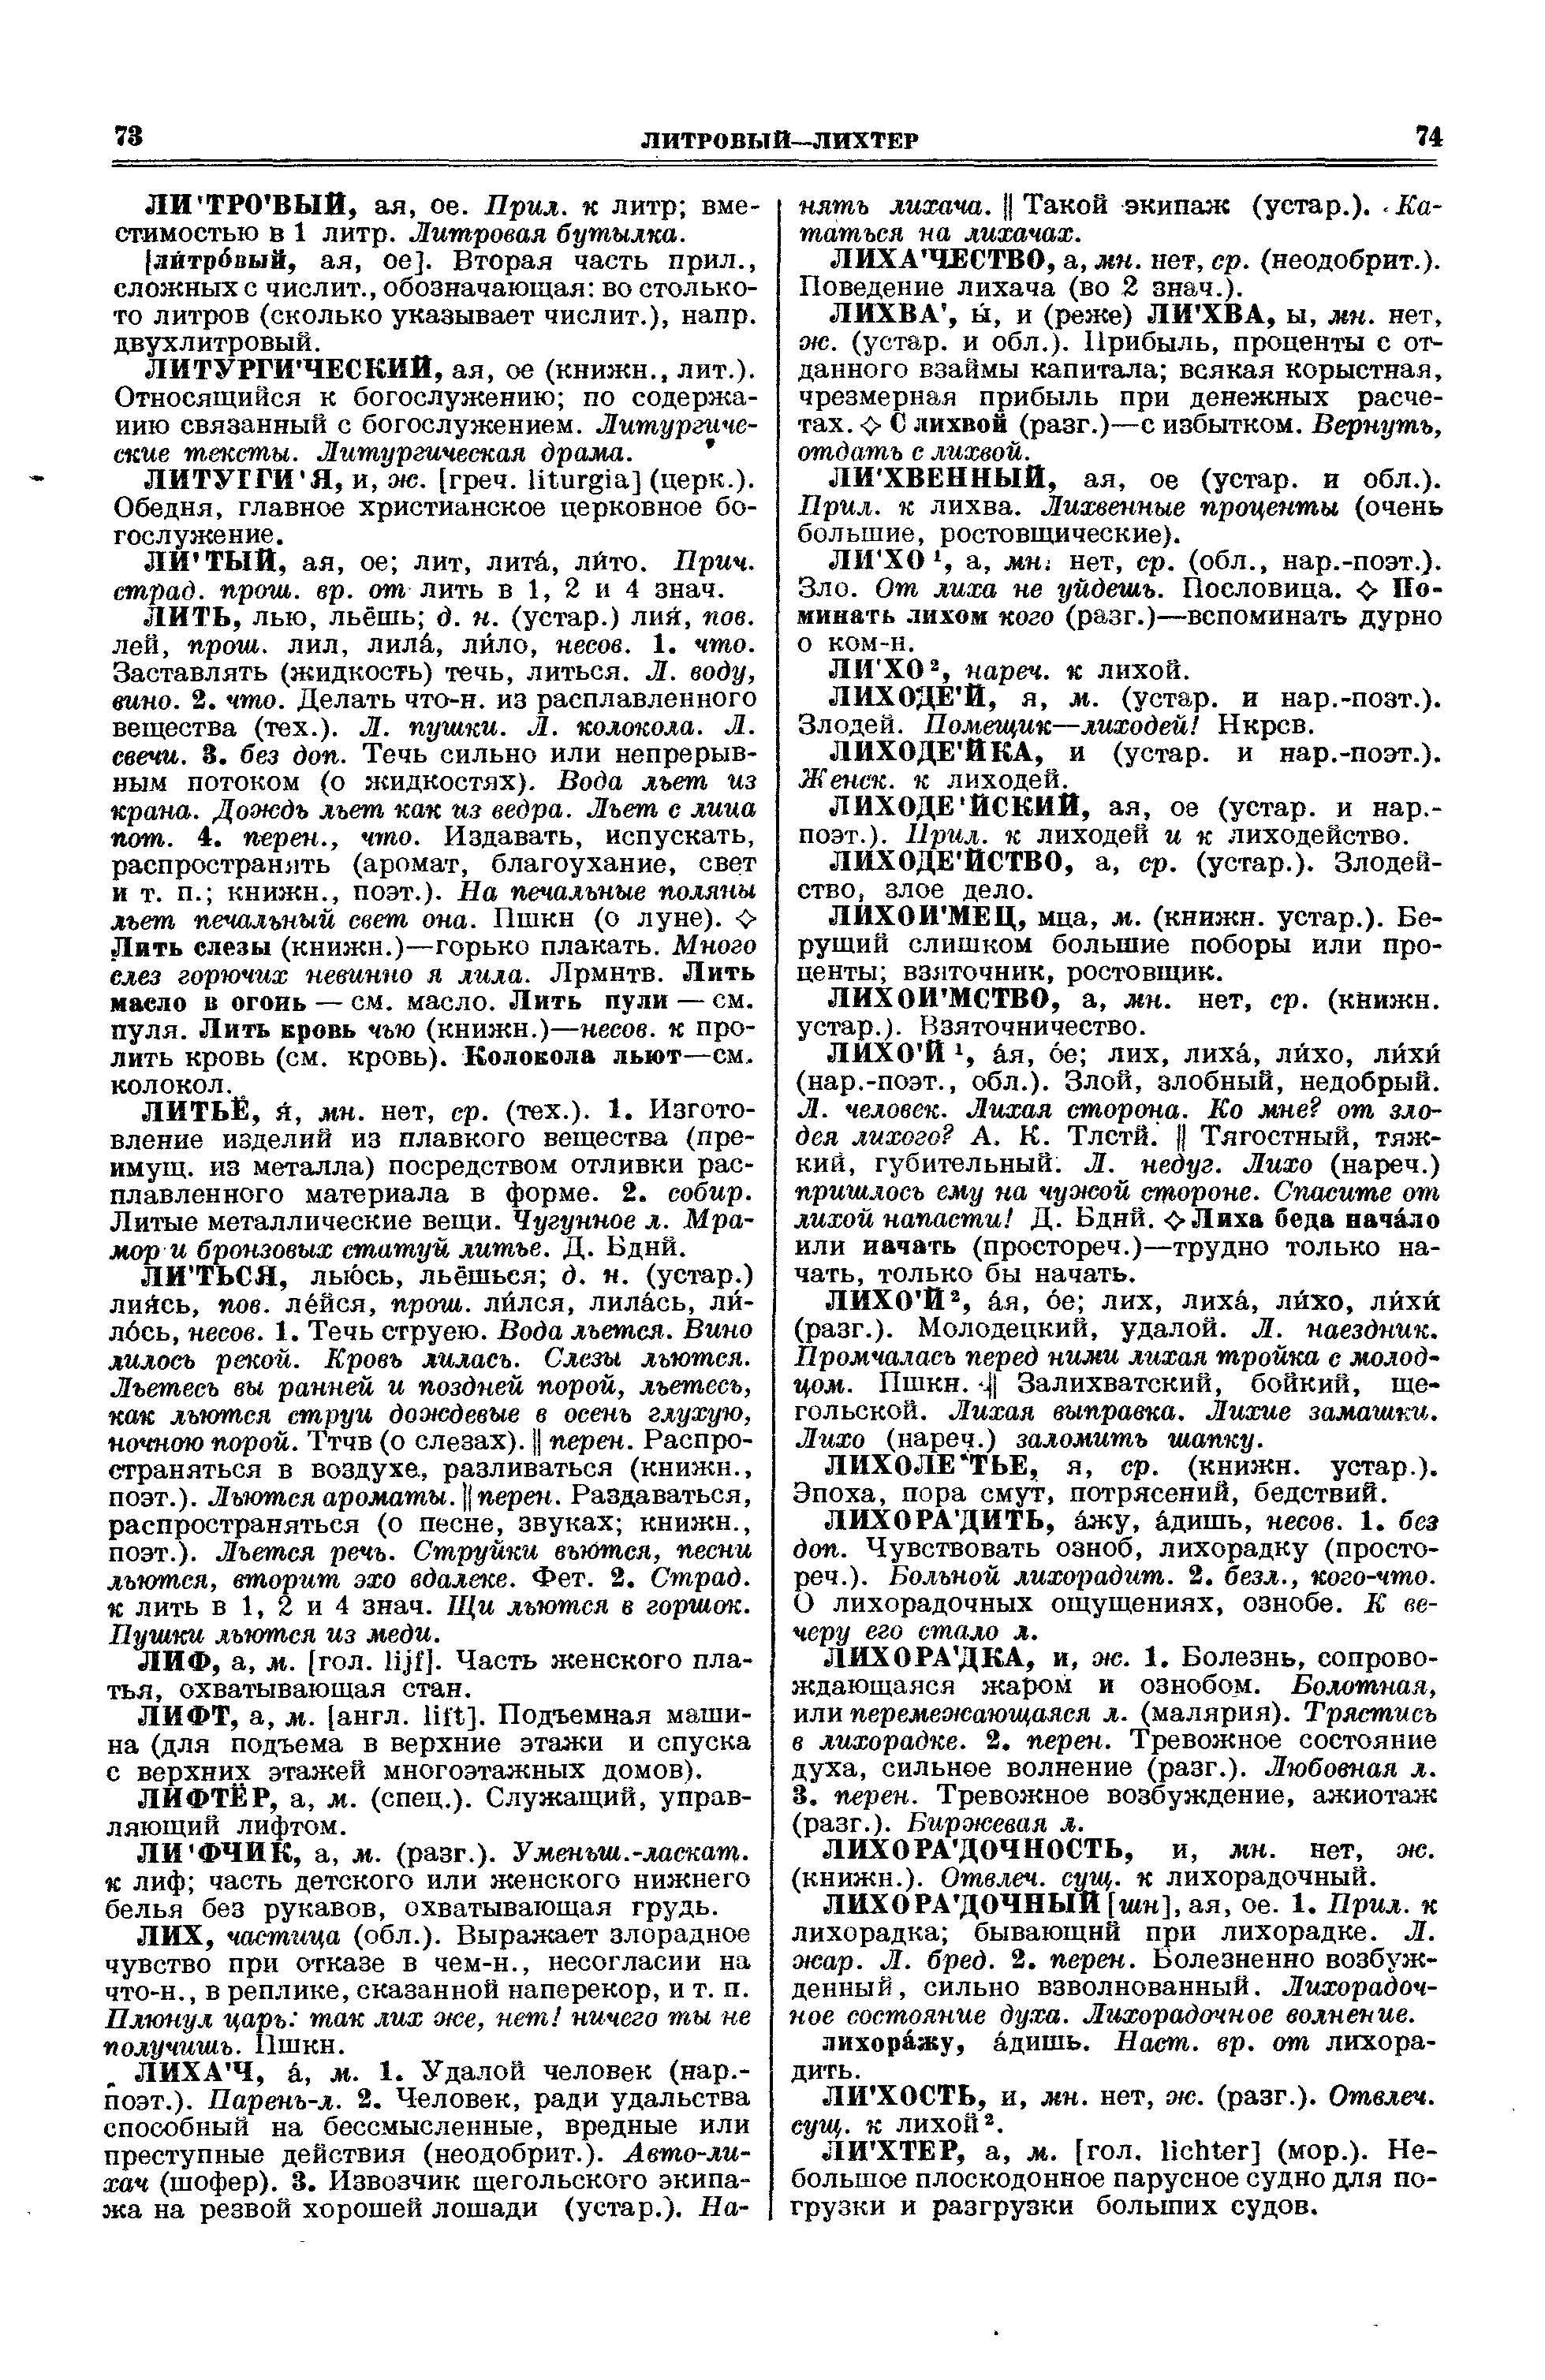 Фотокопия pdf / скан страницы 37 толкового словаря Ушакова (том 2)